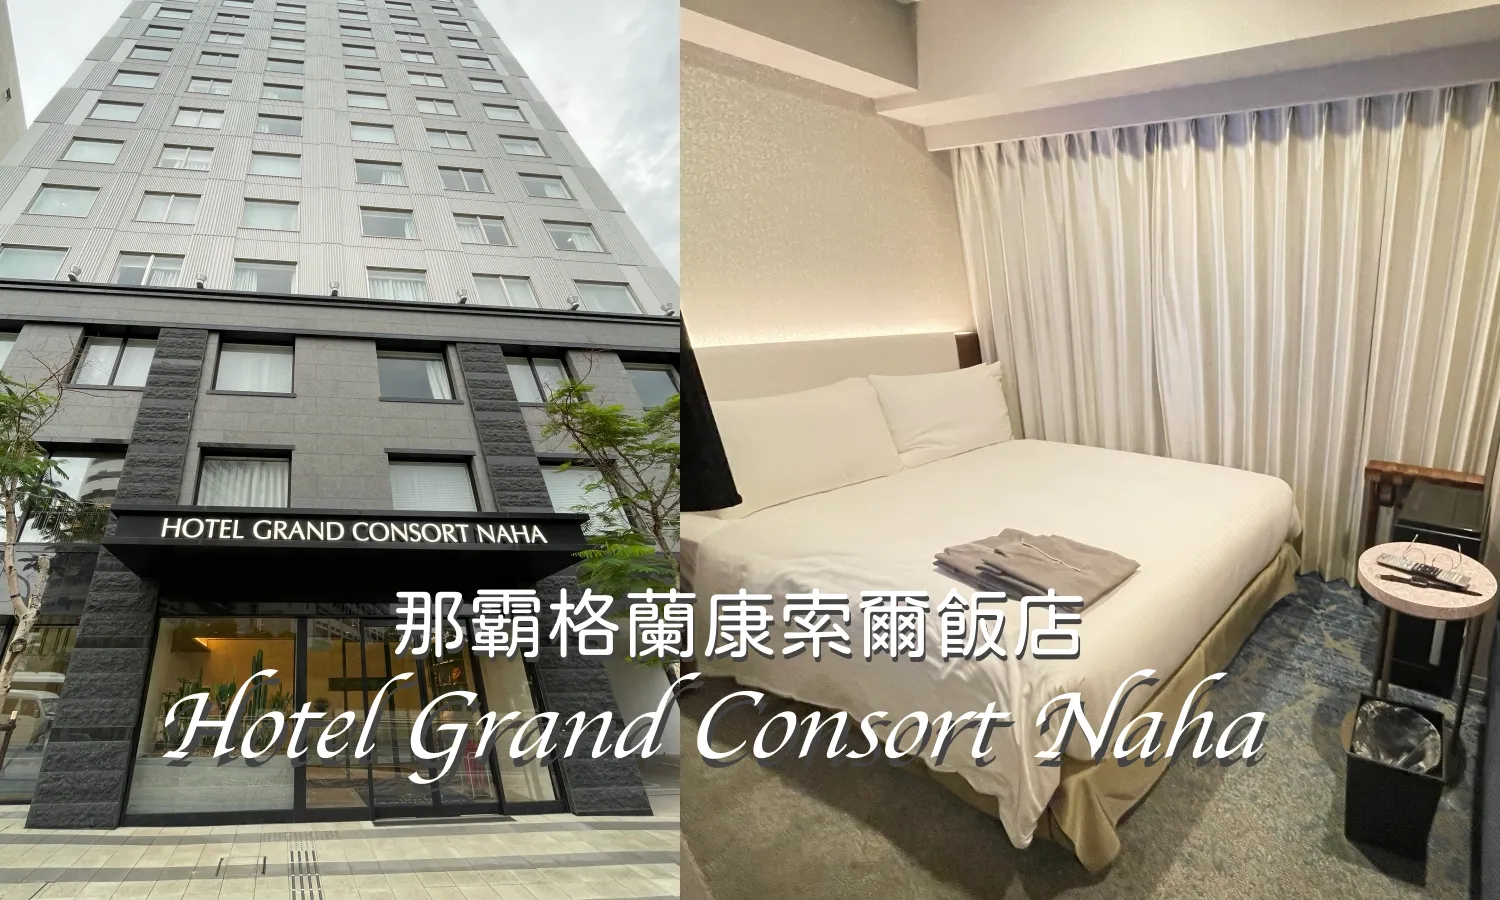 沖繩住宿推薦 Hotel Grand Consort Naha 那霸格蘭康索爾飯店 沖繩飯店